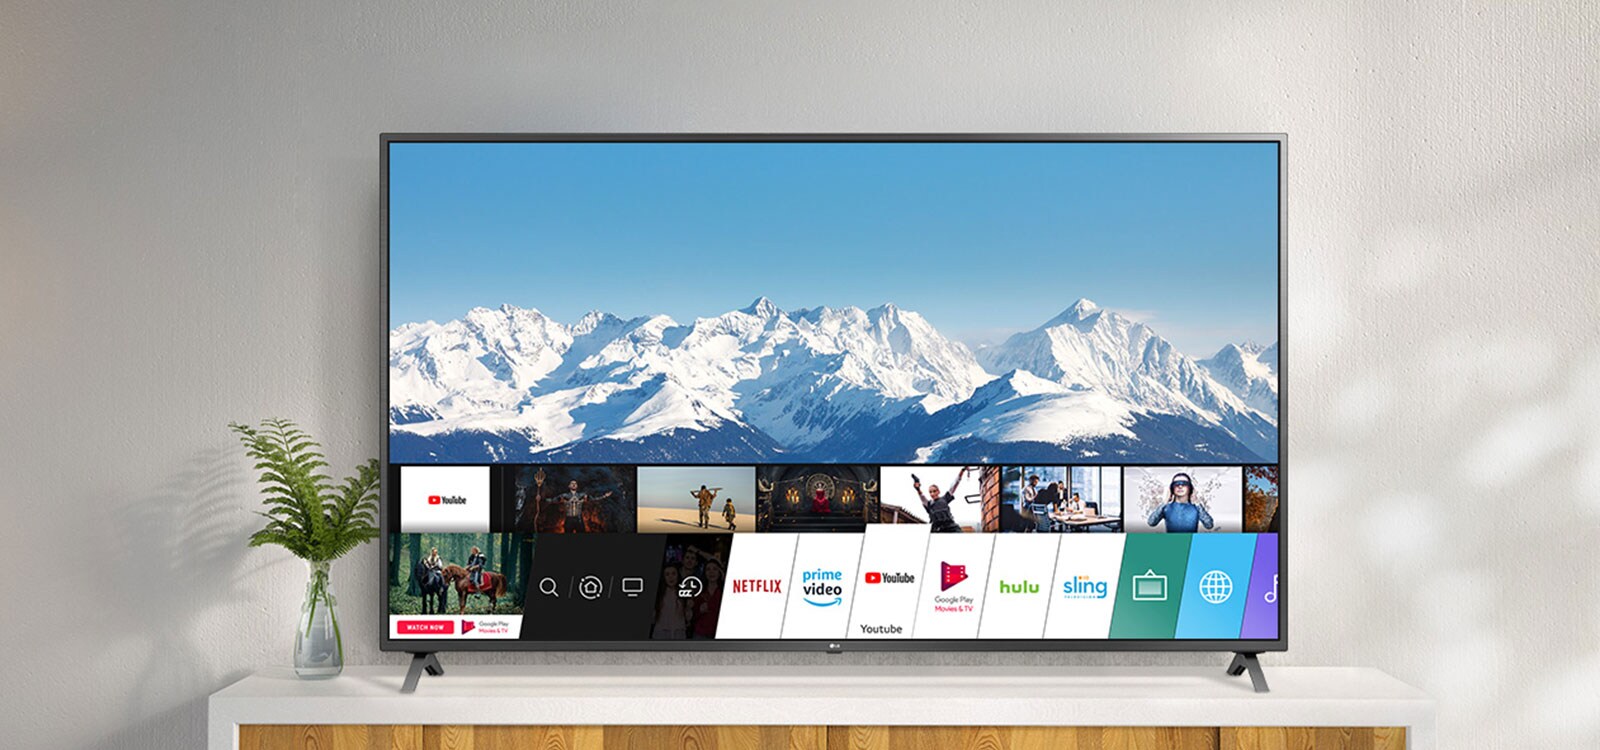 Televizor stojící na bílém stojanu proti bílé zdi. Televizní obrazovka s úvodní obrazovkou se systémem webOS.